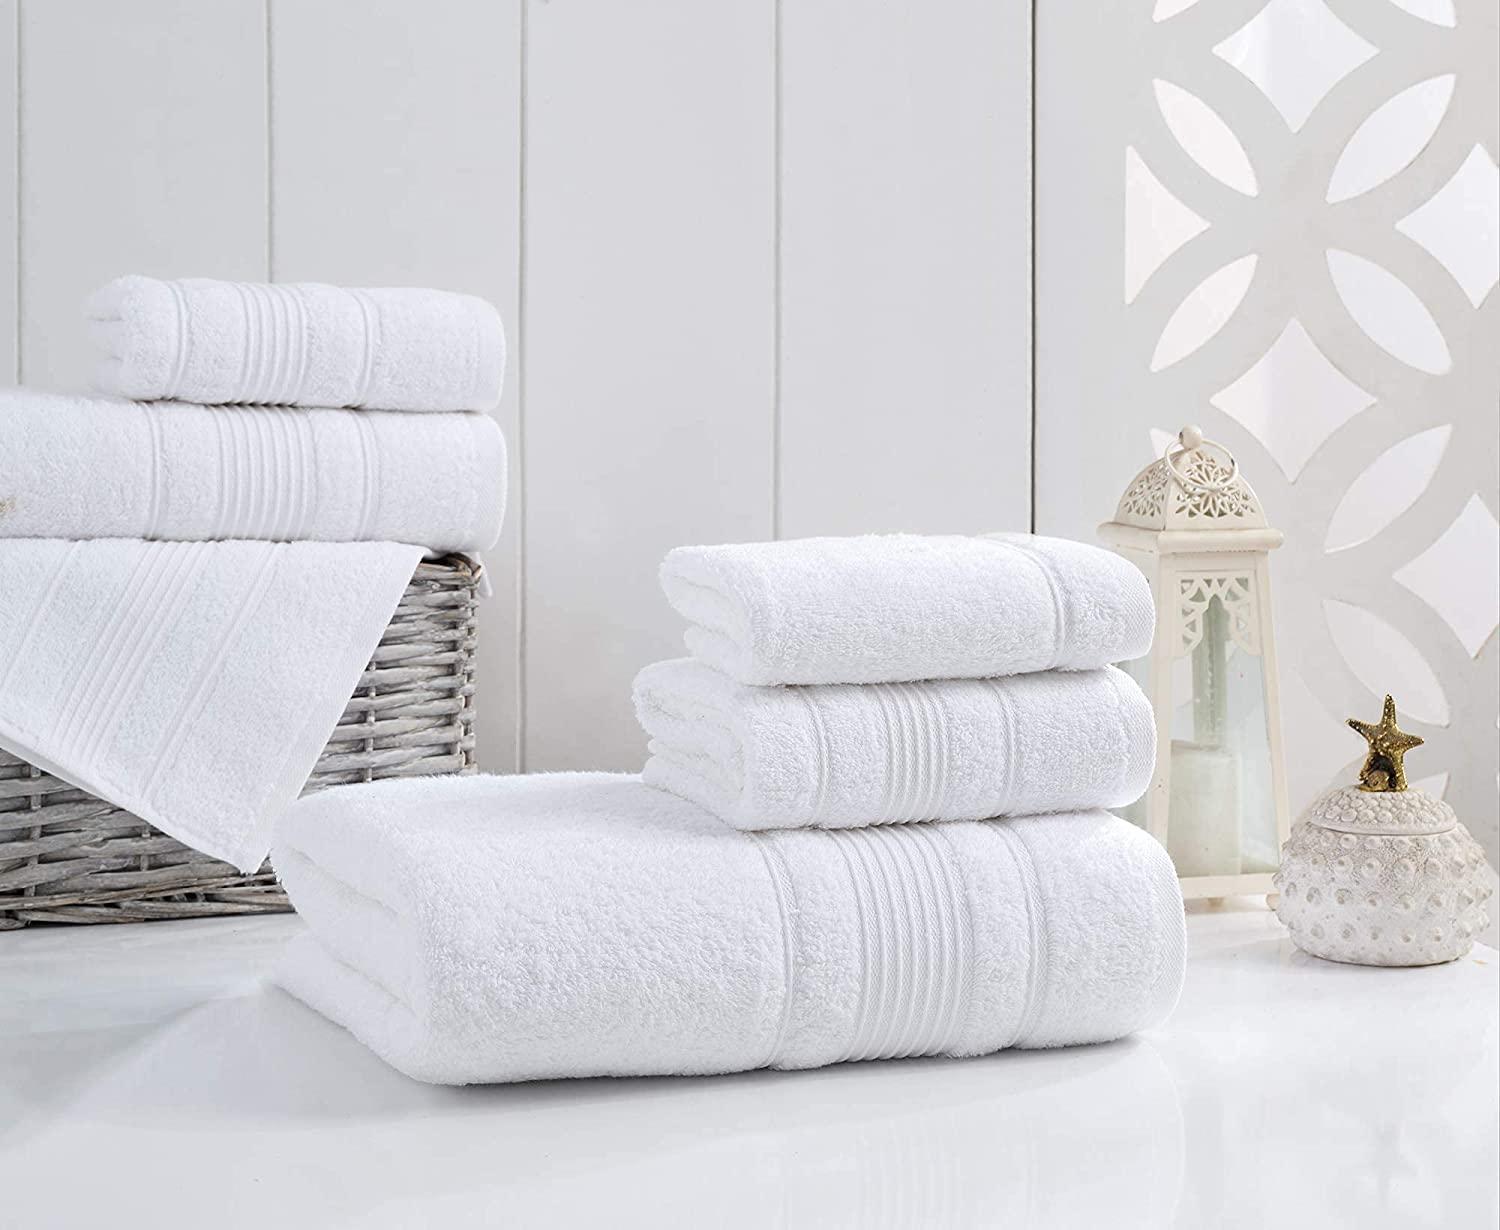 4-Piece Set Premium Quality Bath Towels for Bathroom, Quick Dry Soft A